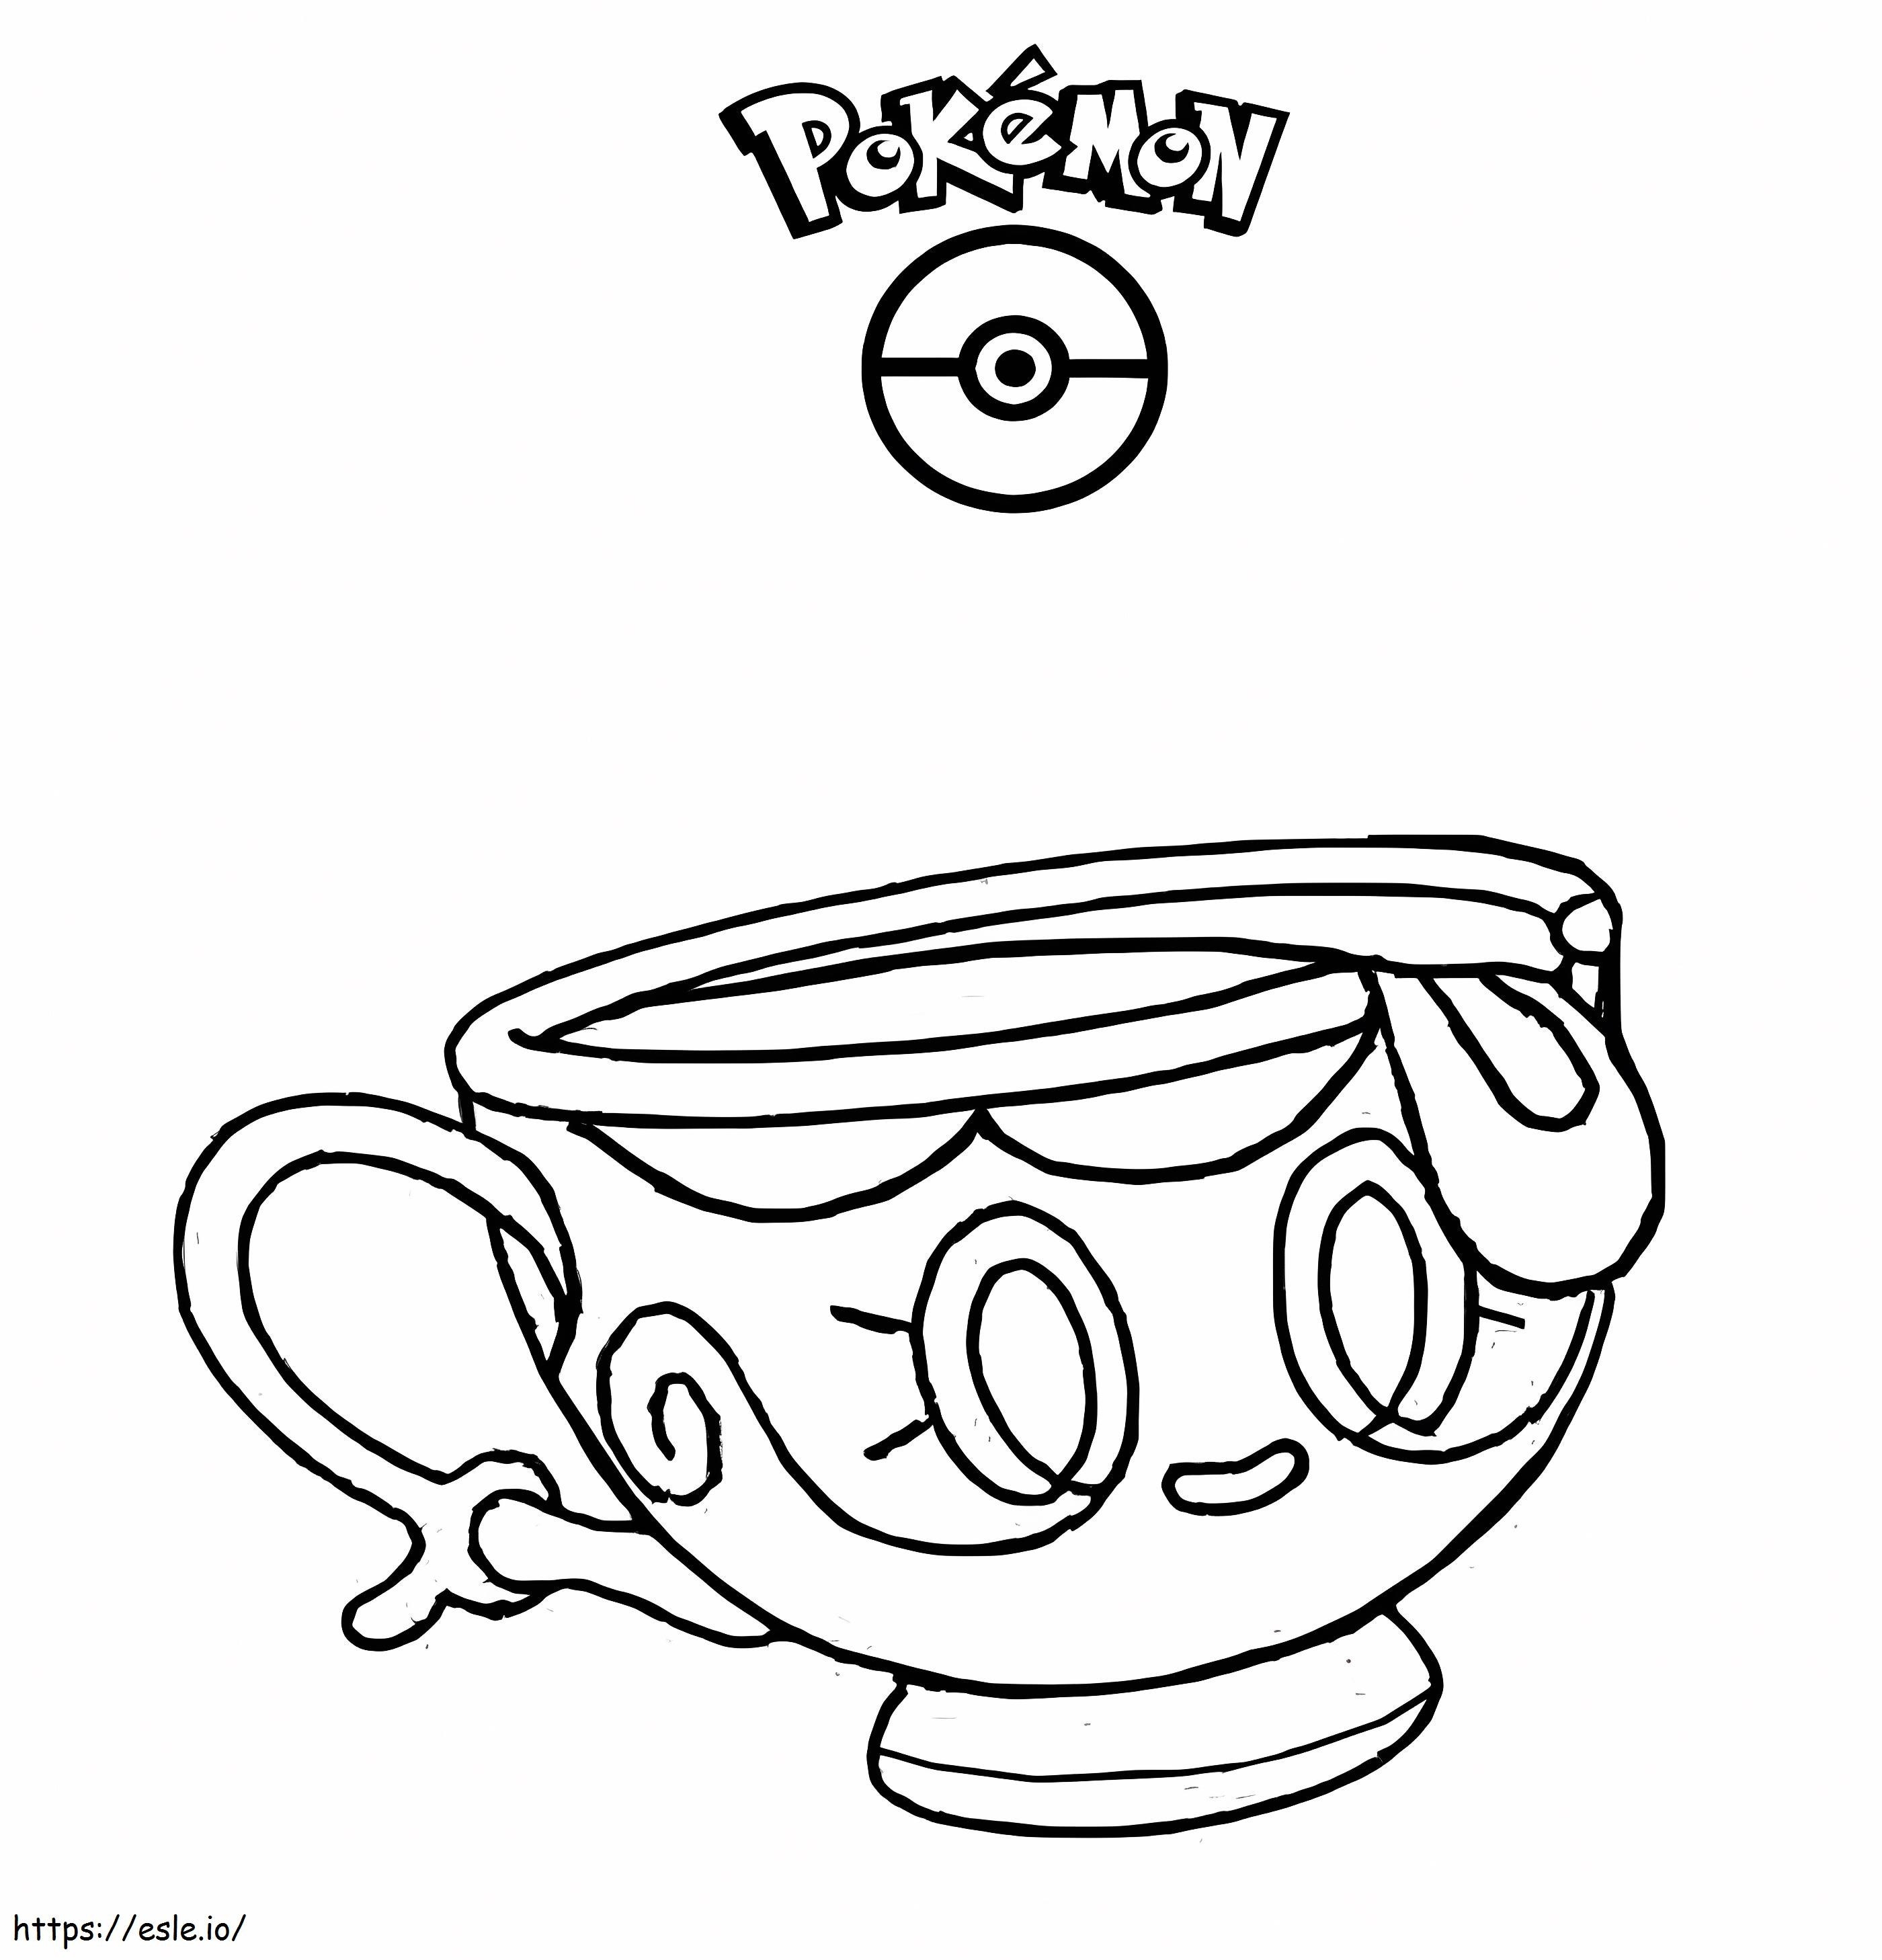 Coloriage Croyez en Pokémon 2 à imprimer dessin